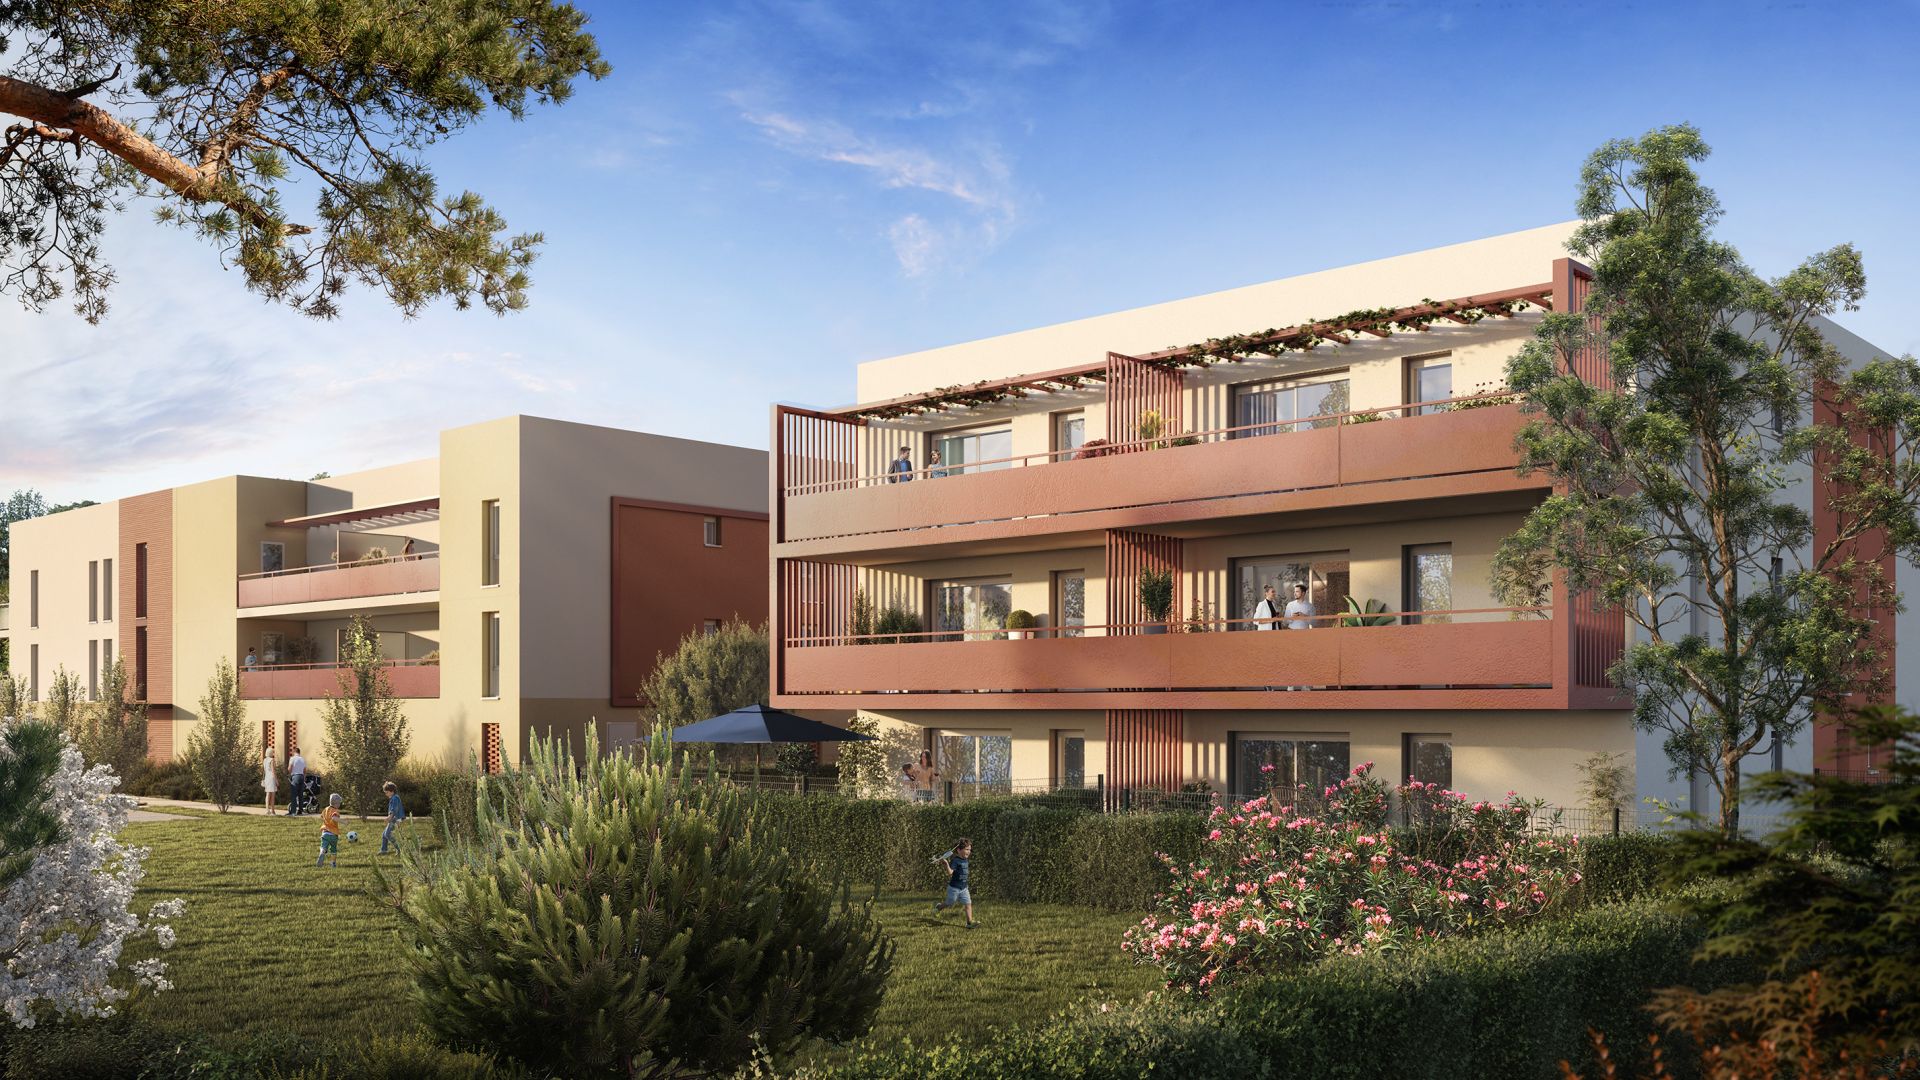 Greencity immobilier - achat appartements neufs du T2 au T3 - Résidence Le Grenat - 66250 Saint-Laurent de la Salanque  